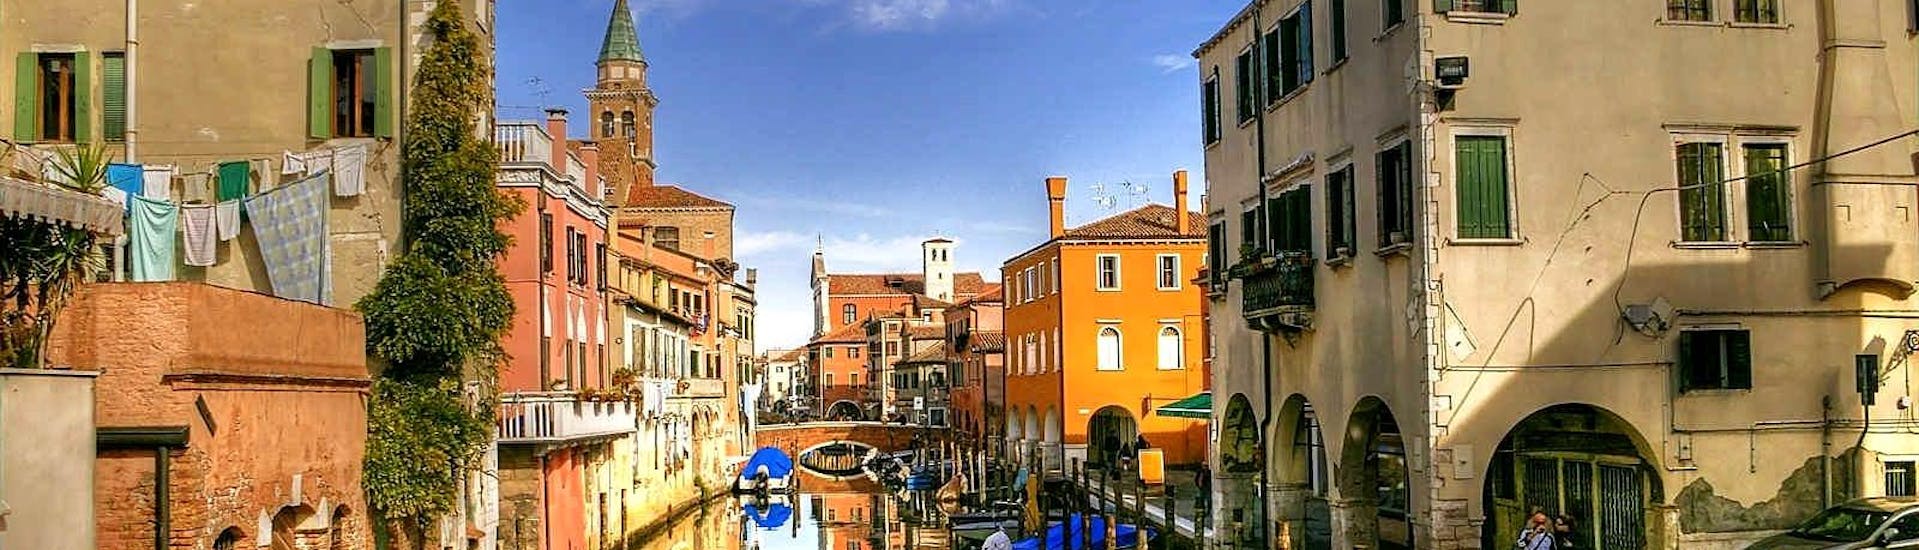 Paseo compartido en góndola en Venecia por el Gran Canal.